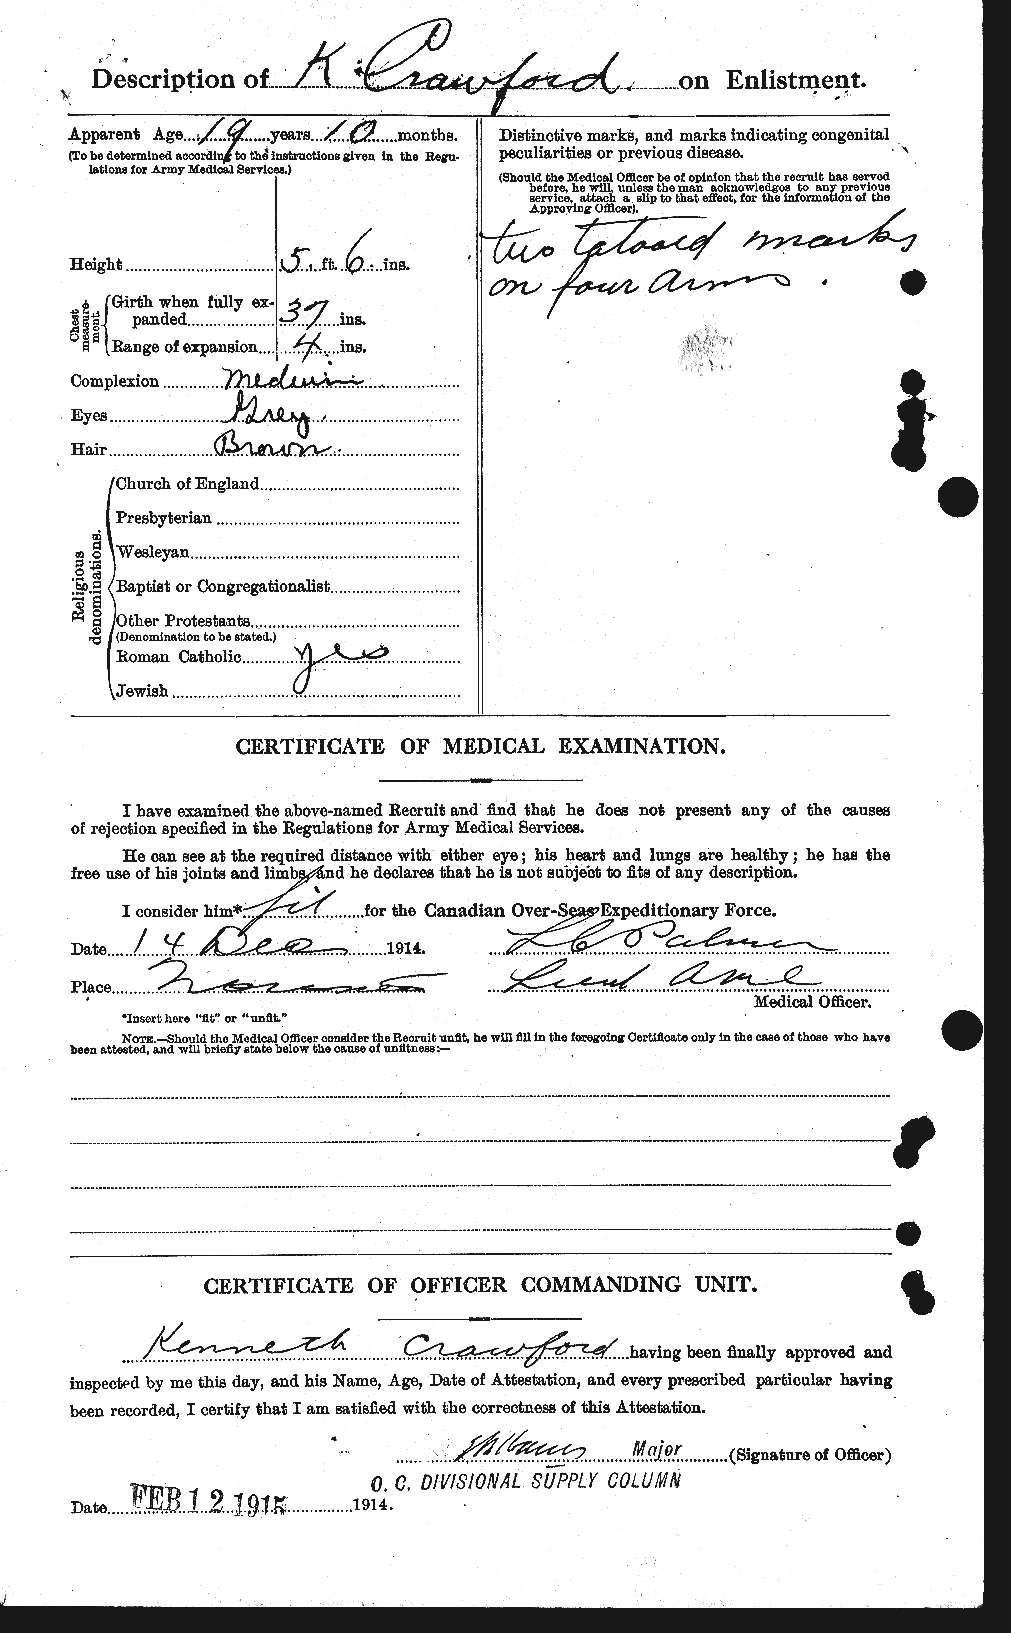 Dossiers du Personnel de la Première Guerre mondiale - CEC 061806b